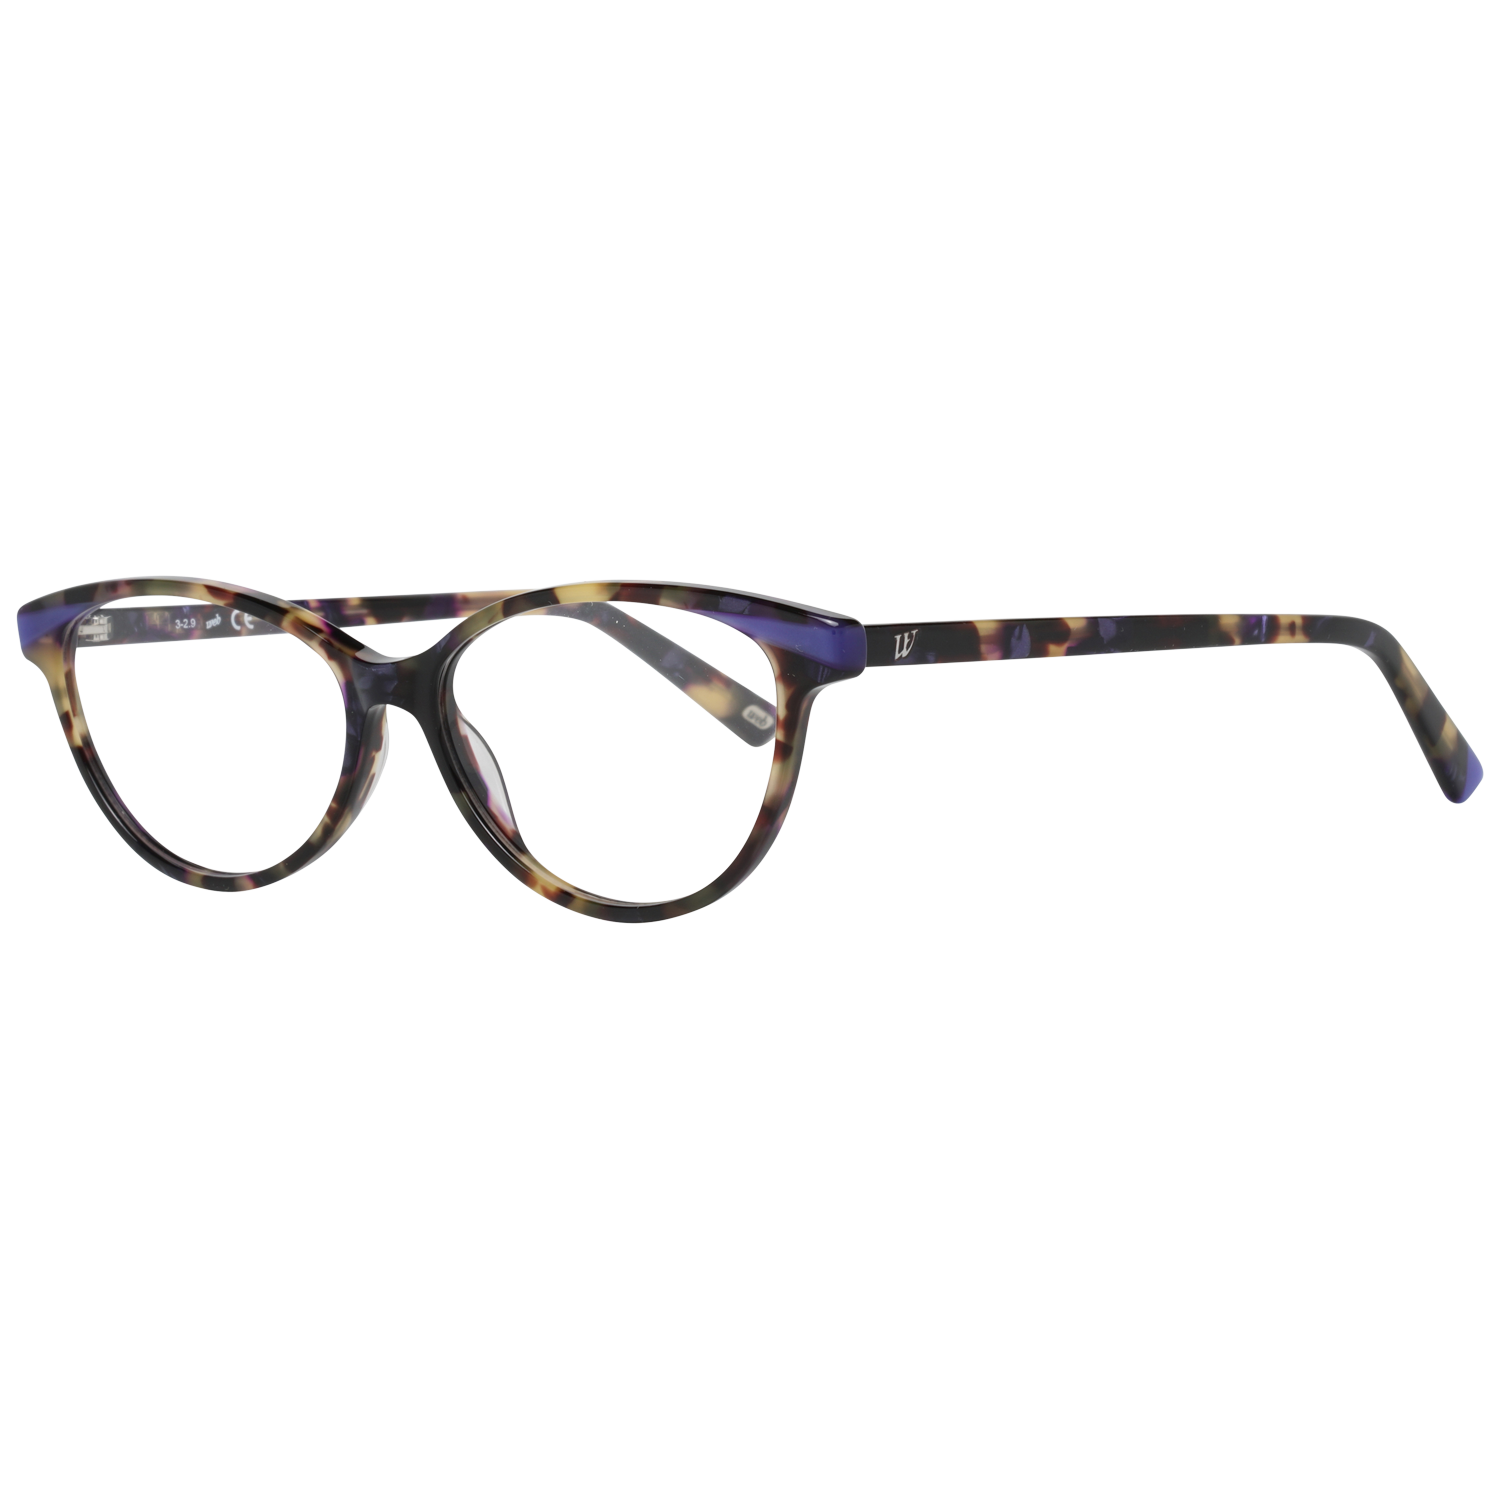 Web Frames Web Glasses Optical Frame WE5282 055 52 Eyeglasses Eyewear UK USA Australia 